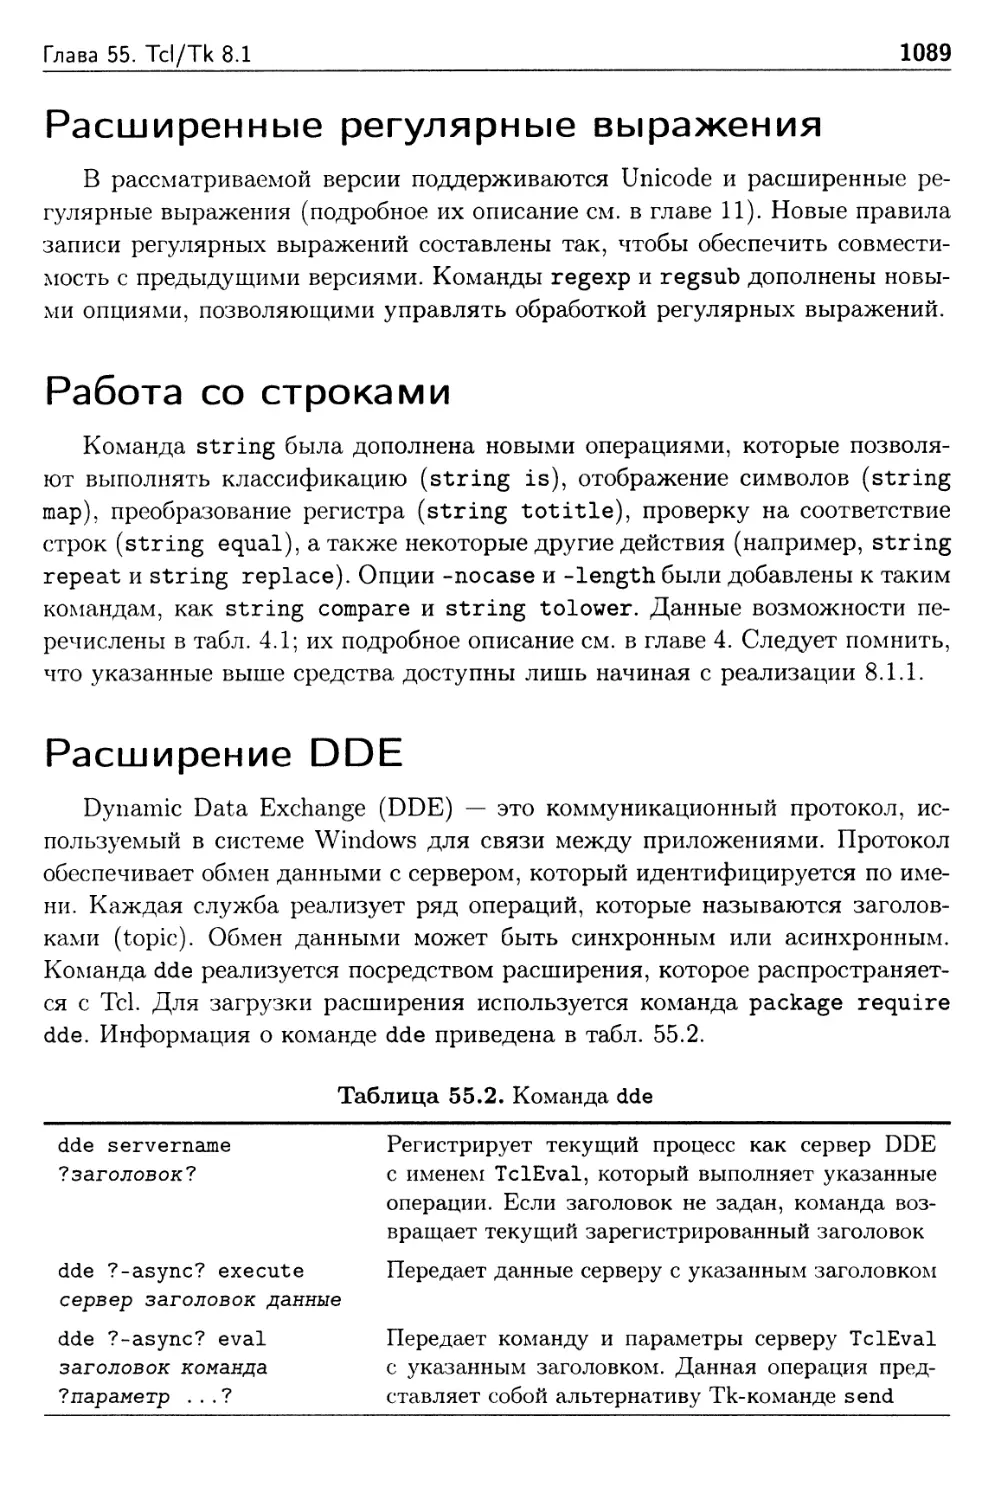 Расширенные регулярные выражения
Работа со строками
Расширение DDE